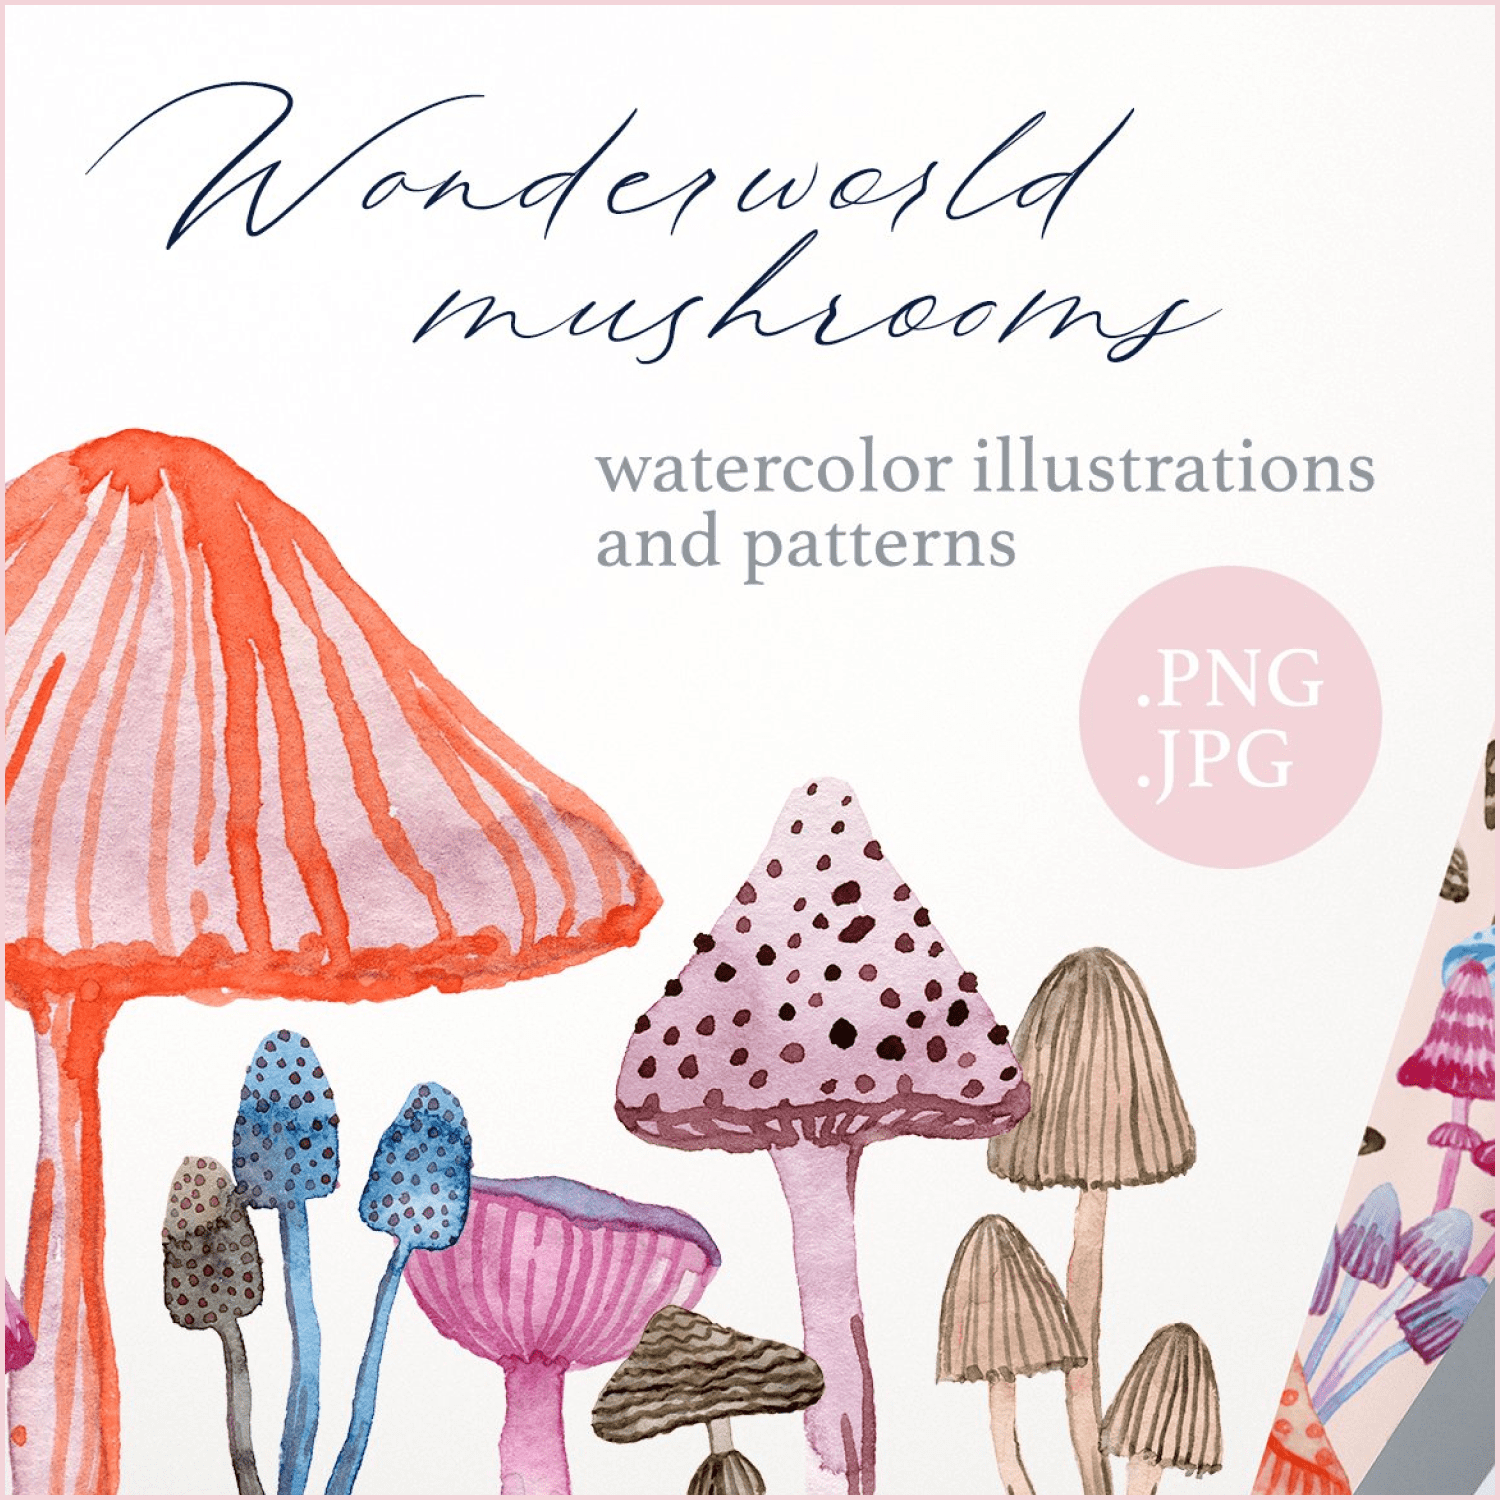 Wonderland watercolor mushrooms - main image preview.